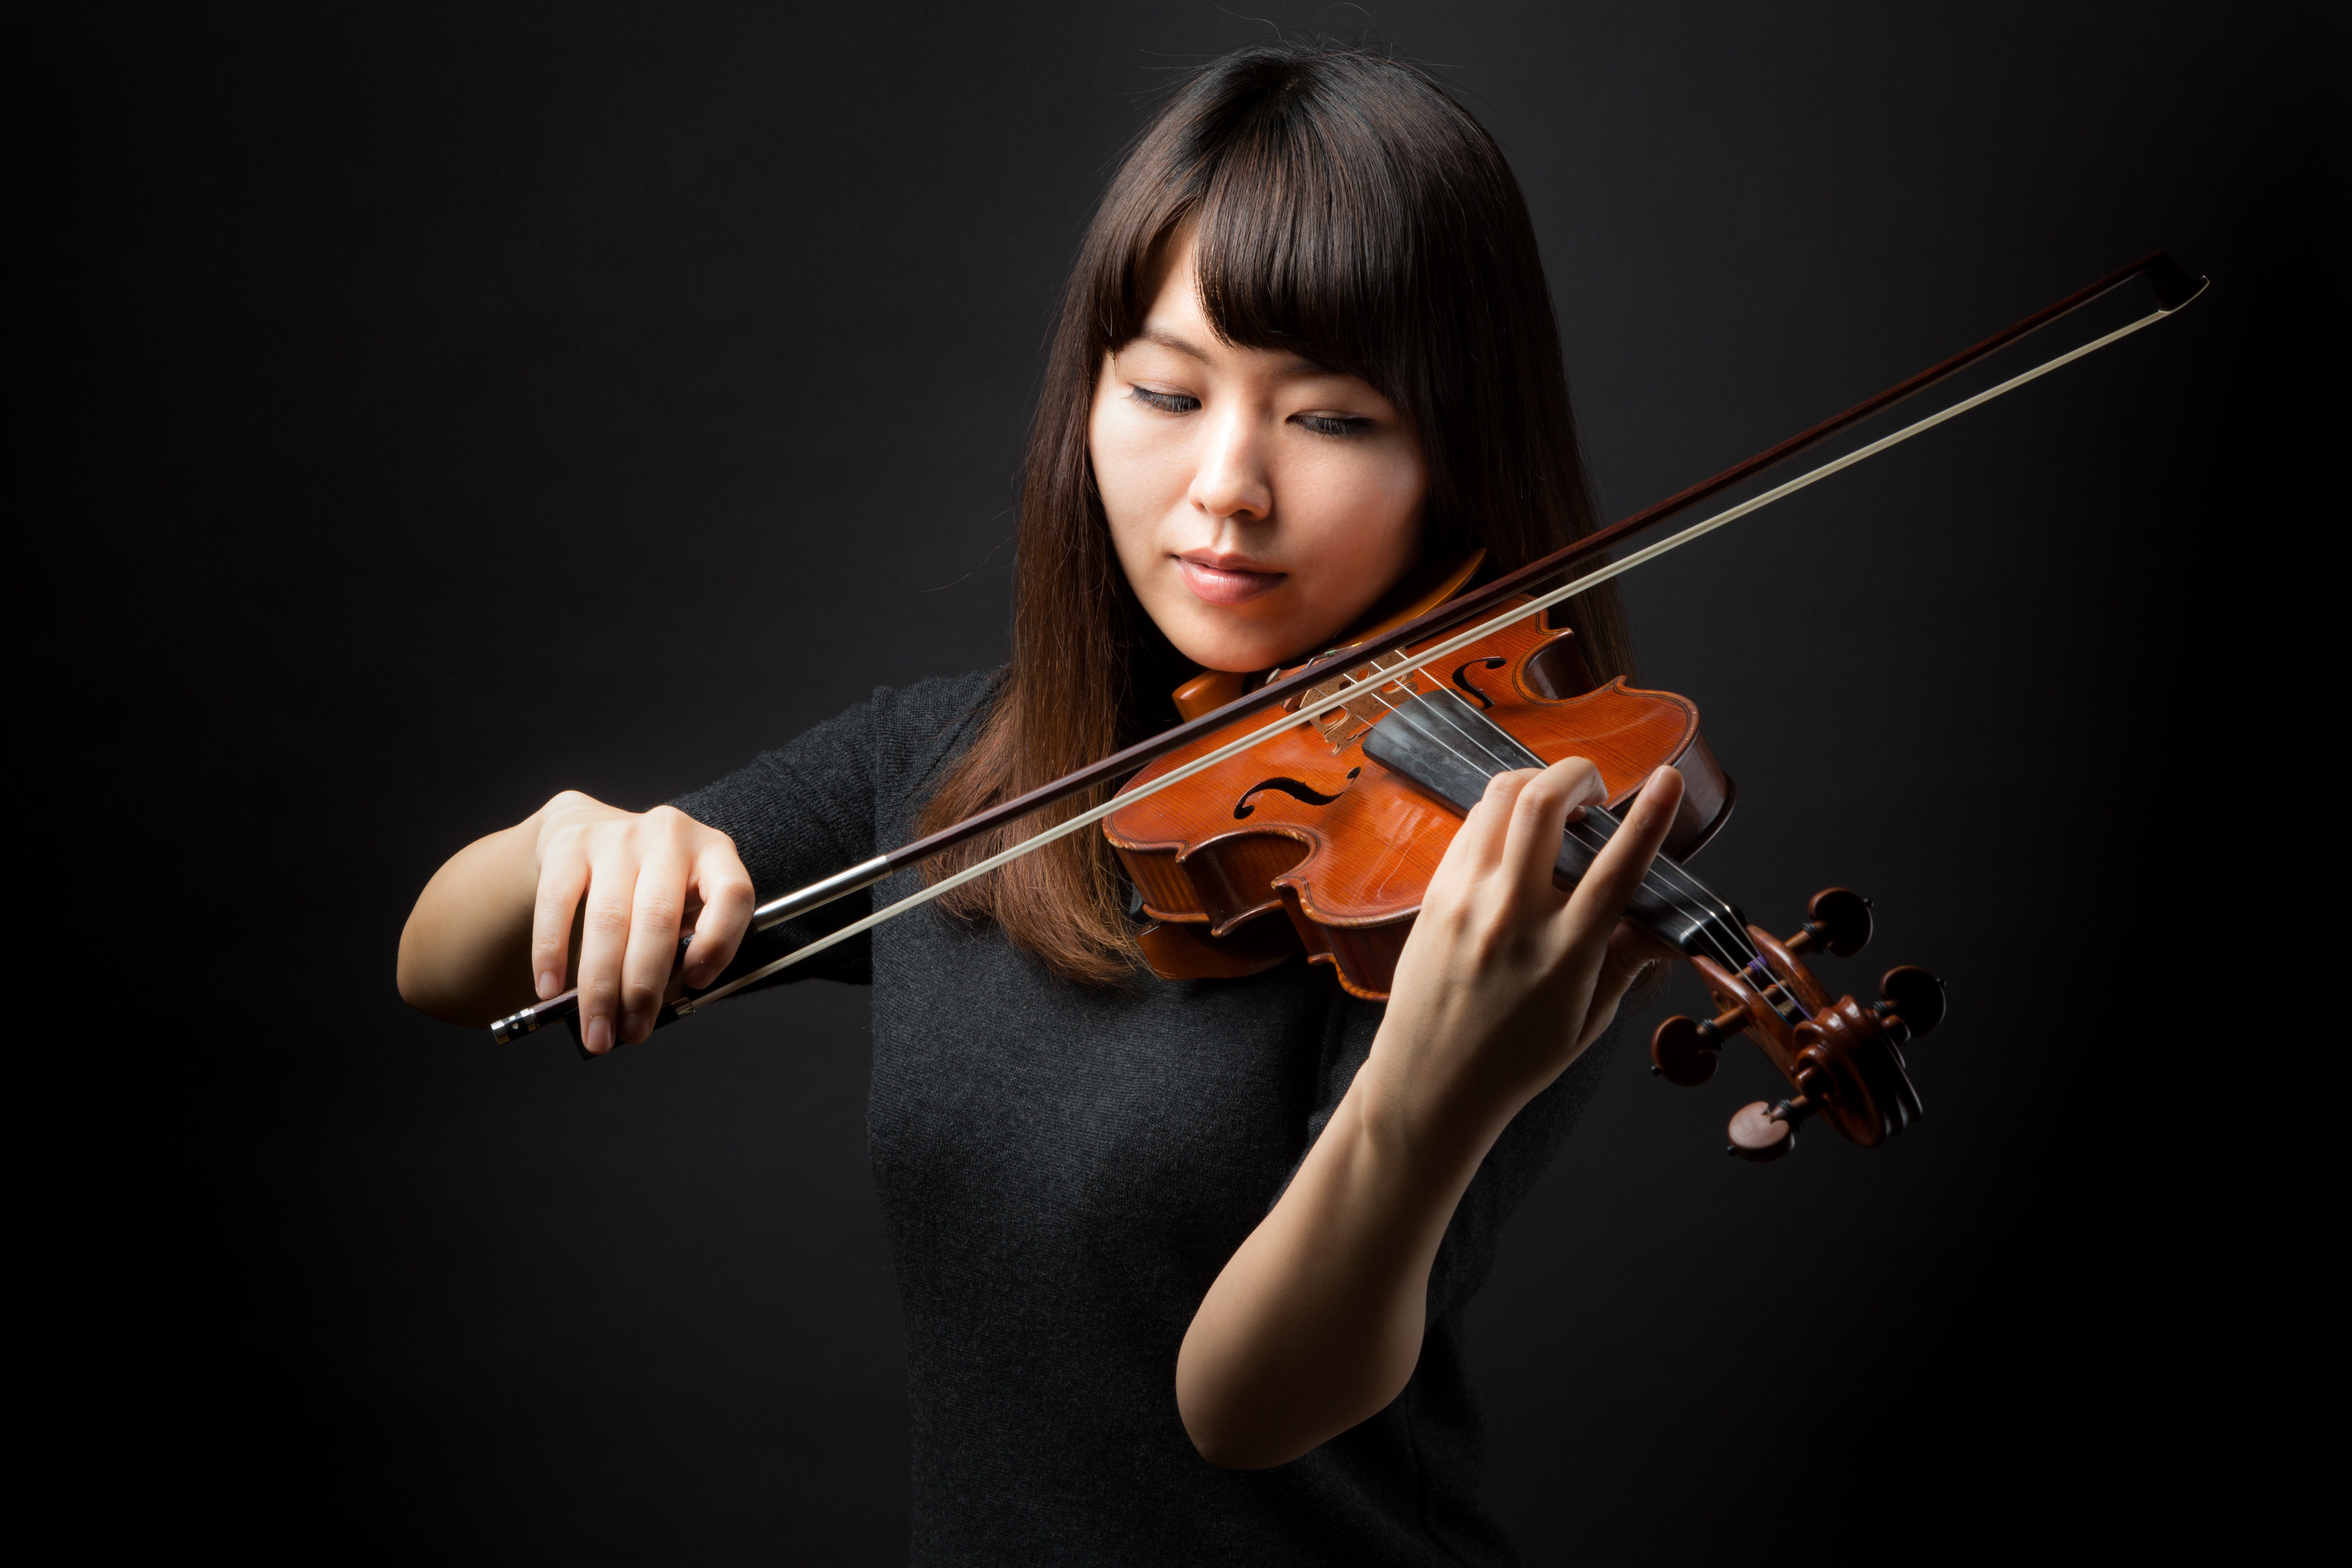 ヴァイオリン演奏中の女性の写真を無料ダウンロード フリー素材 ぱくたそ